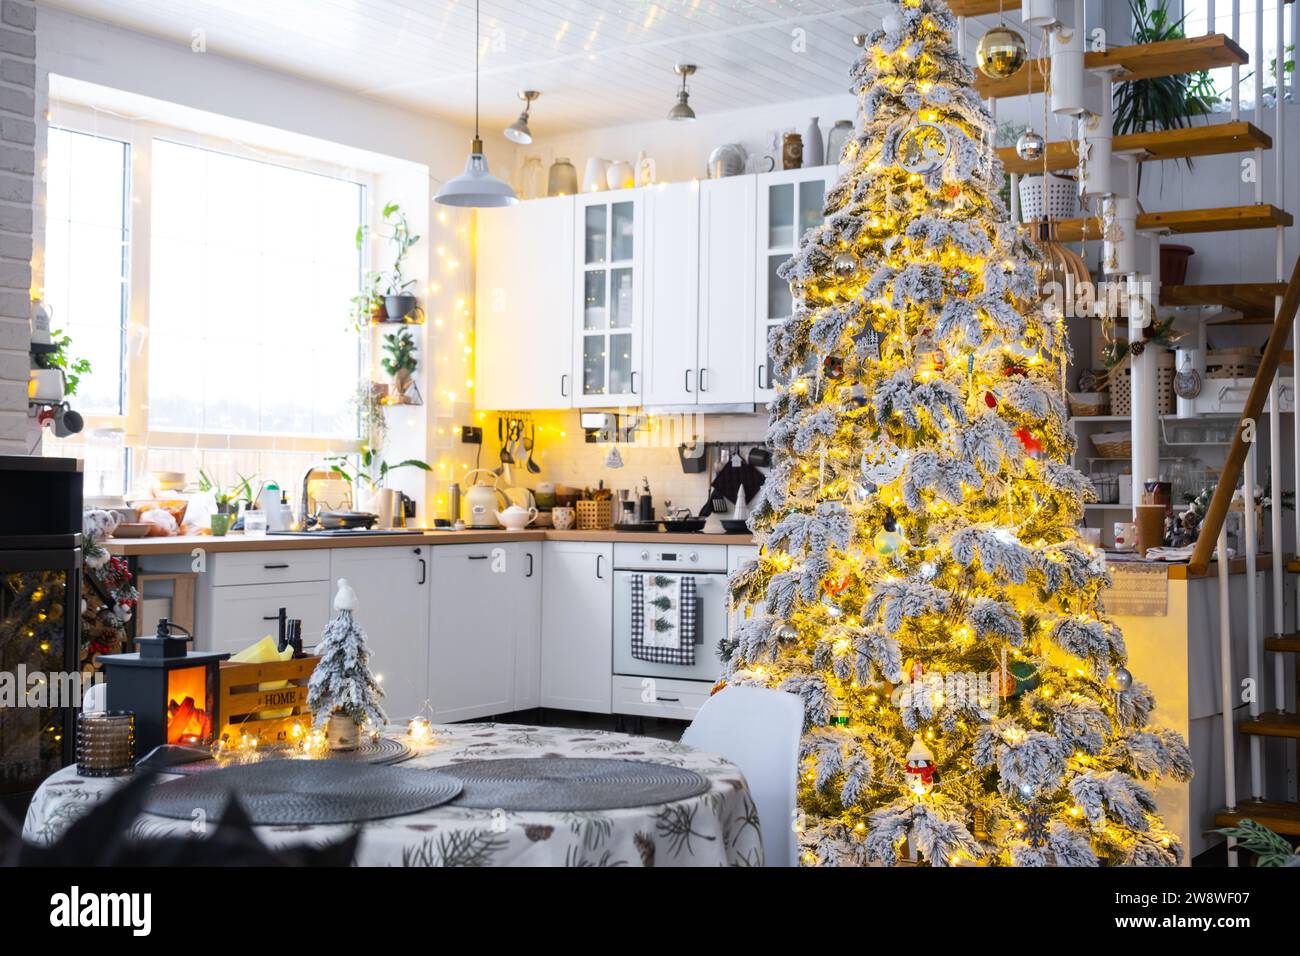 Decorazioni natalizie natalizie in cucina bianca, interni moderni del villaggio con un albero di Natale innevato e luci delle fate. Capodanno, atmosfera natalizia, casa accogliente, M Foto Stock